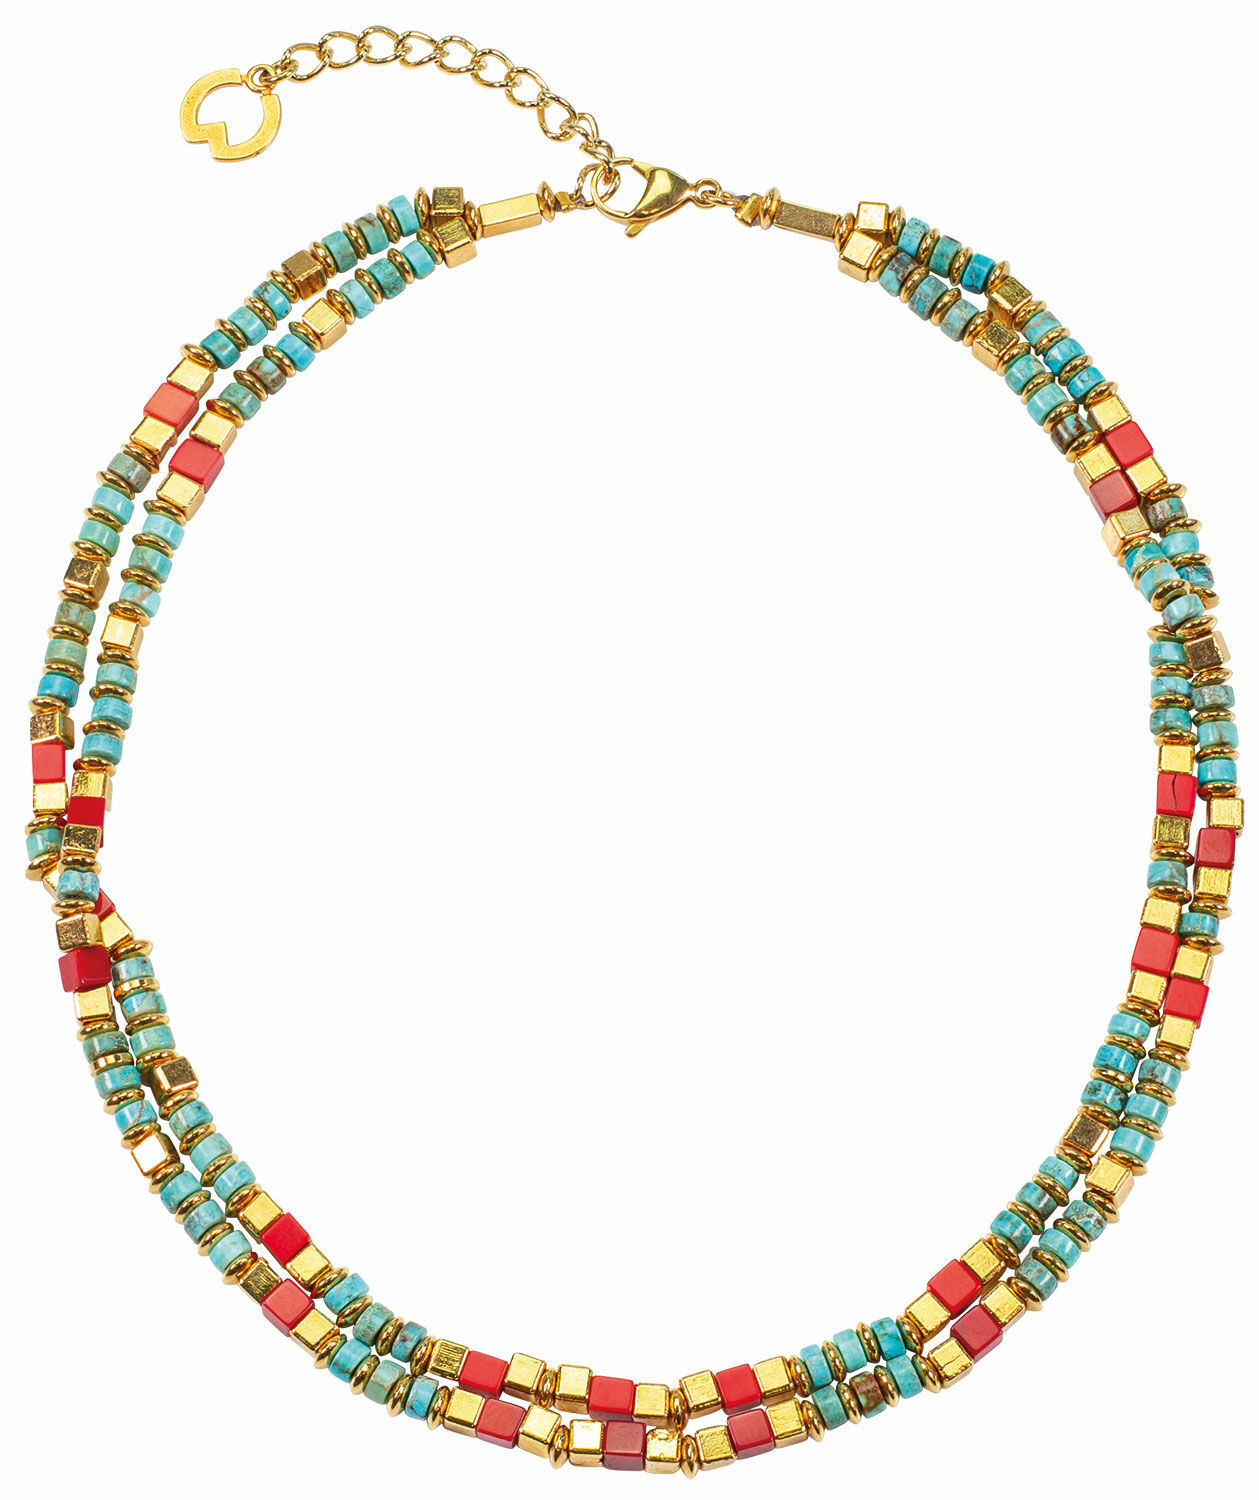 Necklace "Aziza" by Petra Waszak